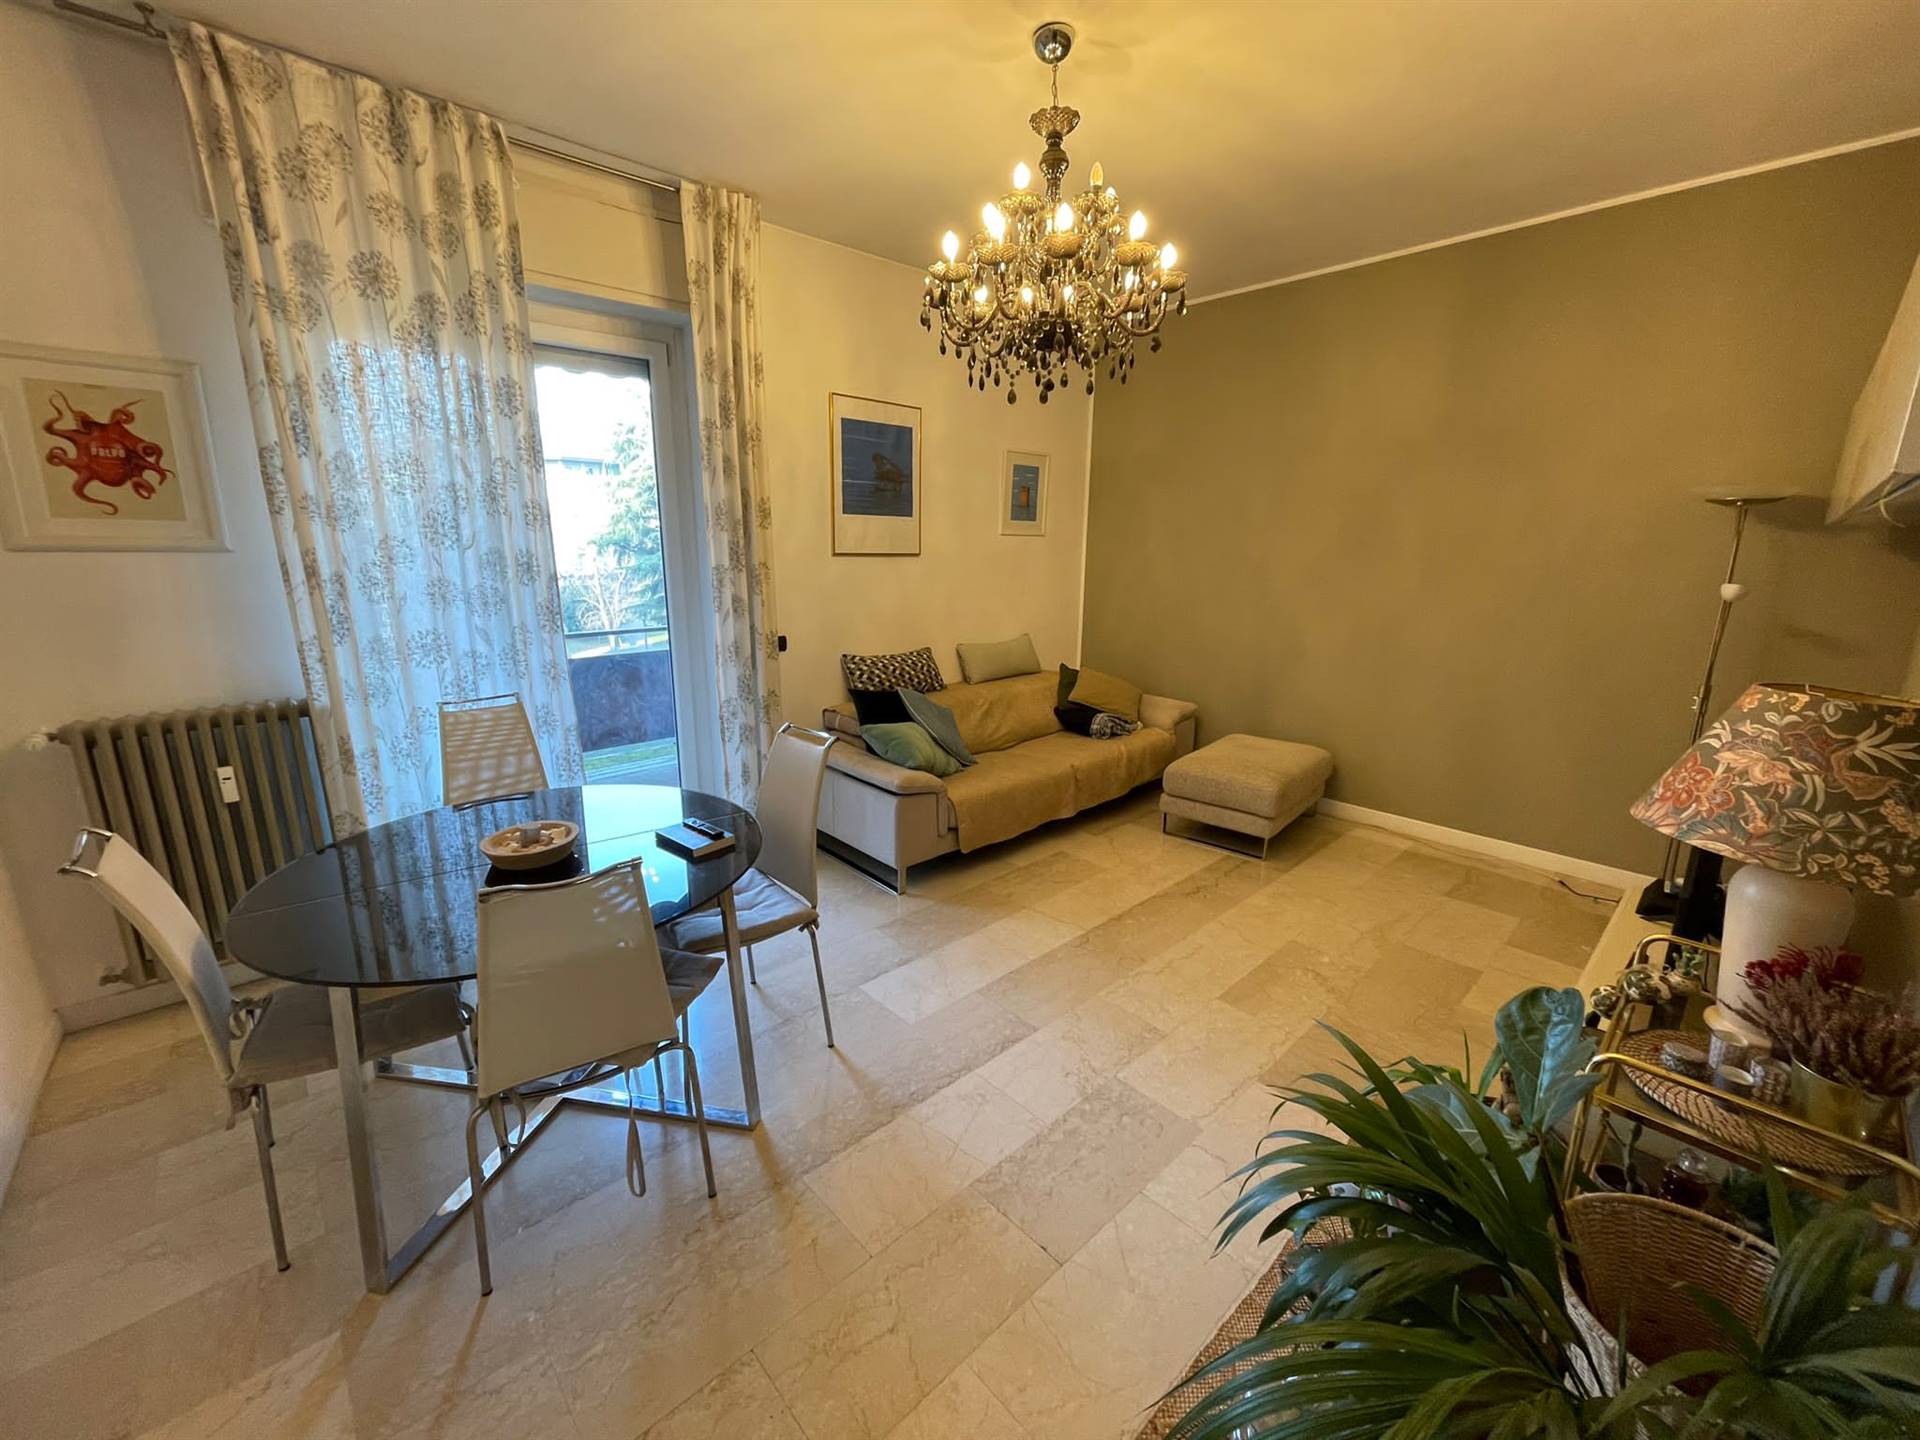 Appartamento in affitto a Legnano, 3 locali, prezzo € 750 | PortaleAgenzieImmobiliari.it